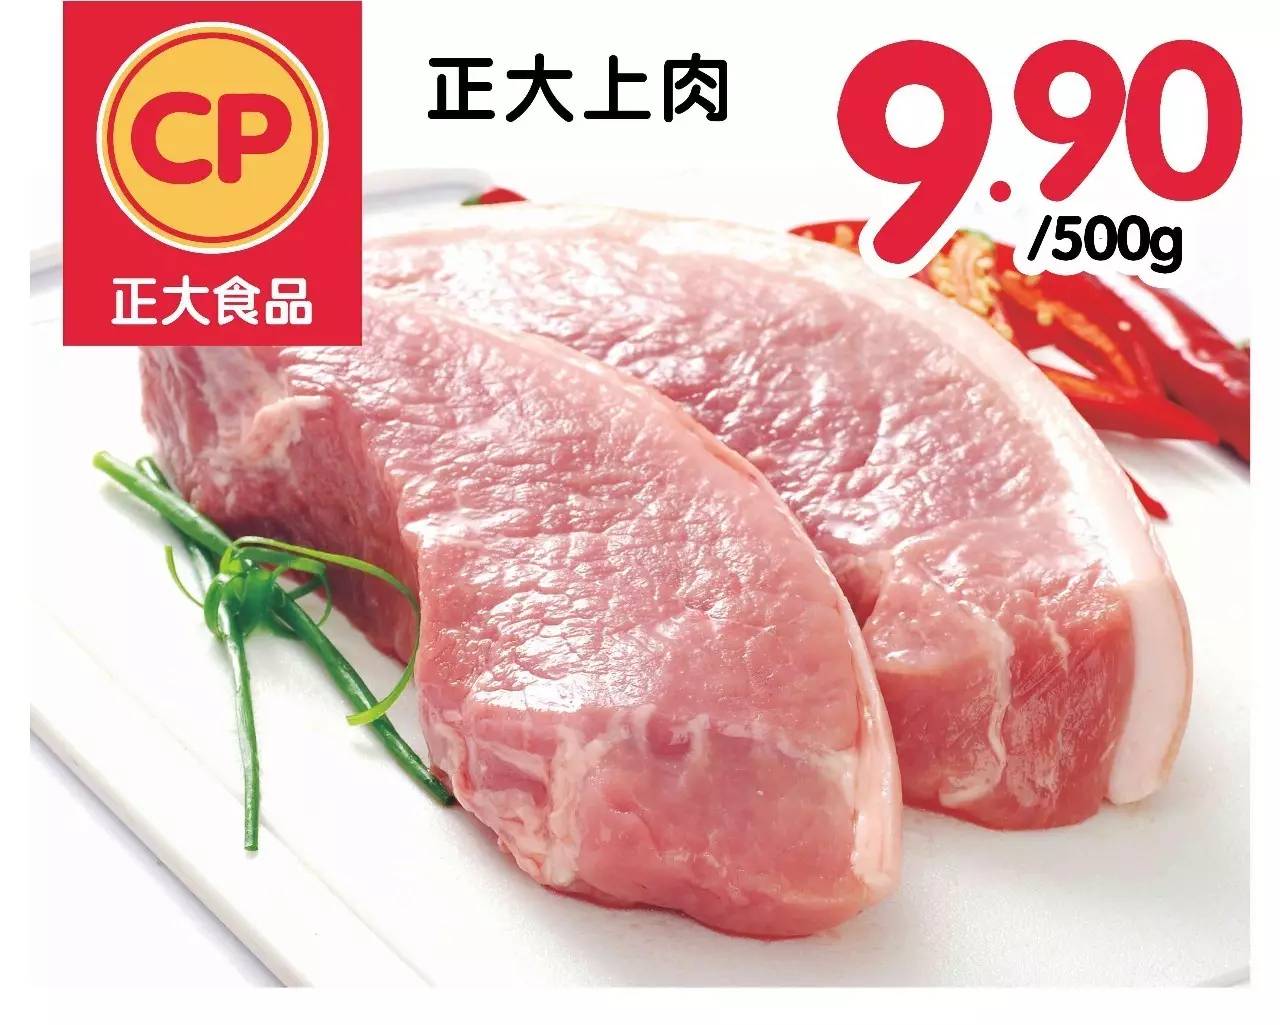 【粤东】正大五星安全猪肉已经来到您身边